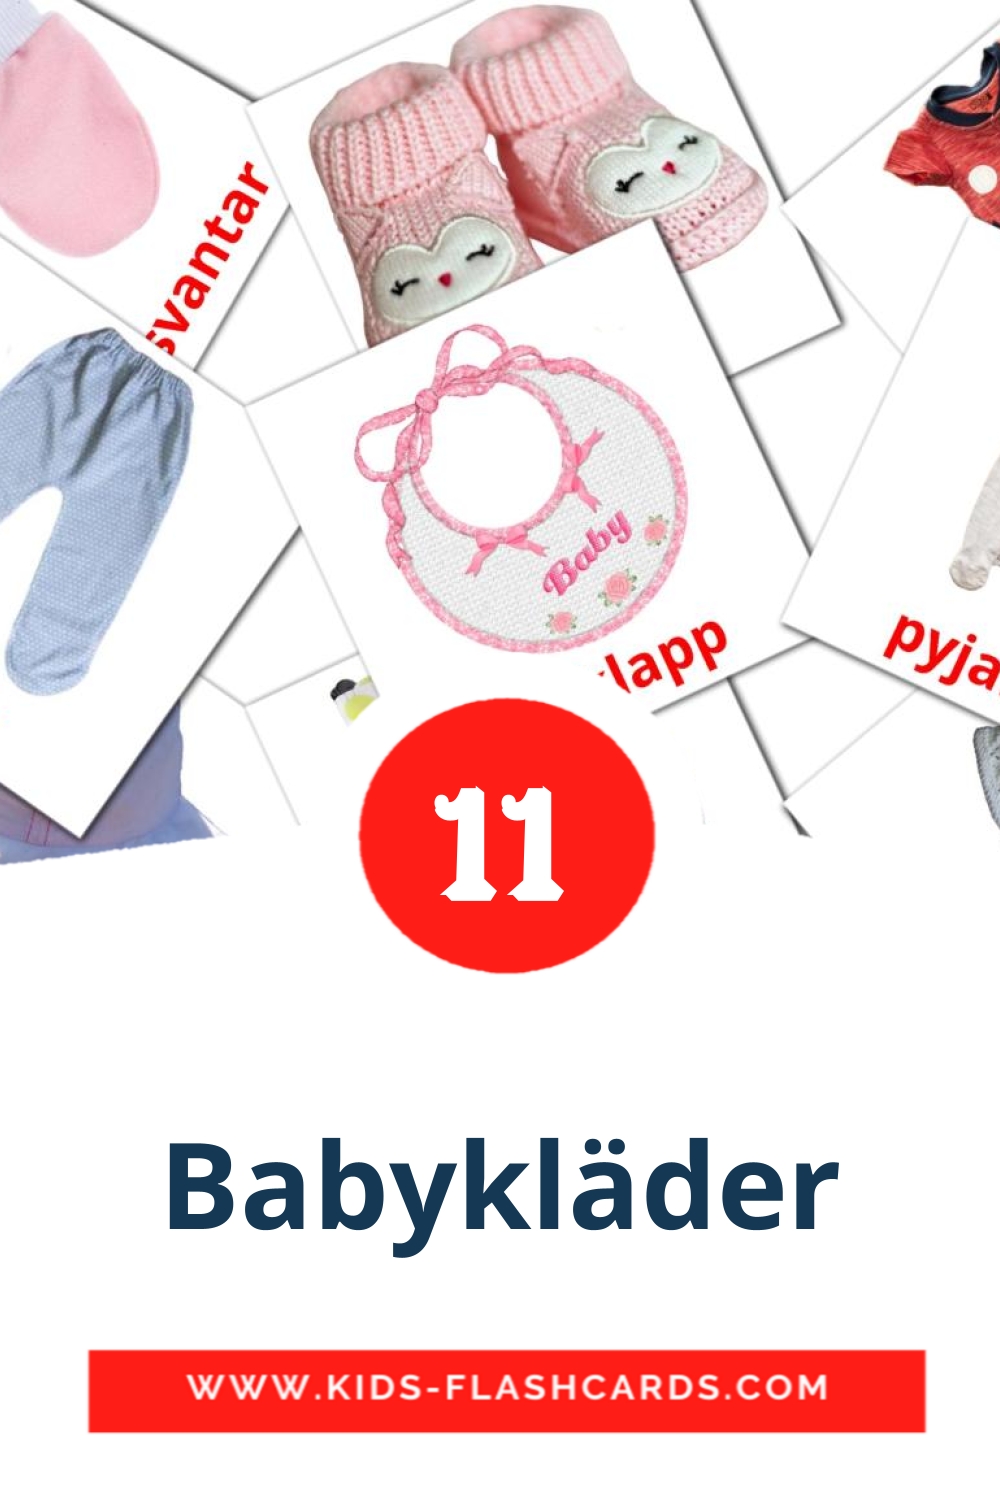 12 cartes illustrées de babykläder pour la maternelle en suédois